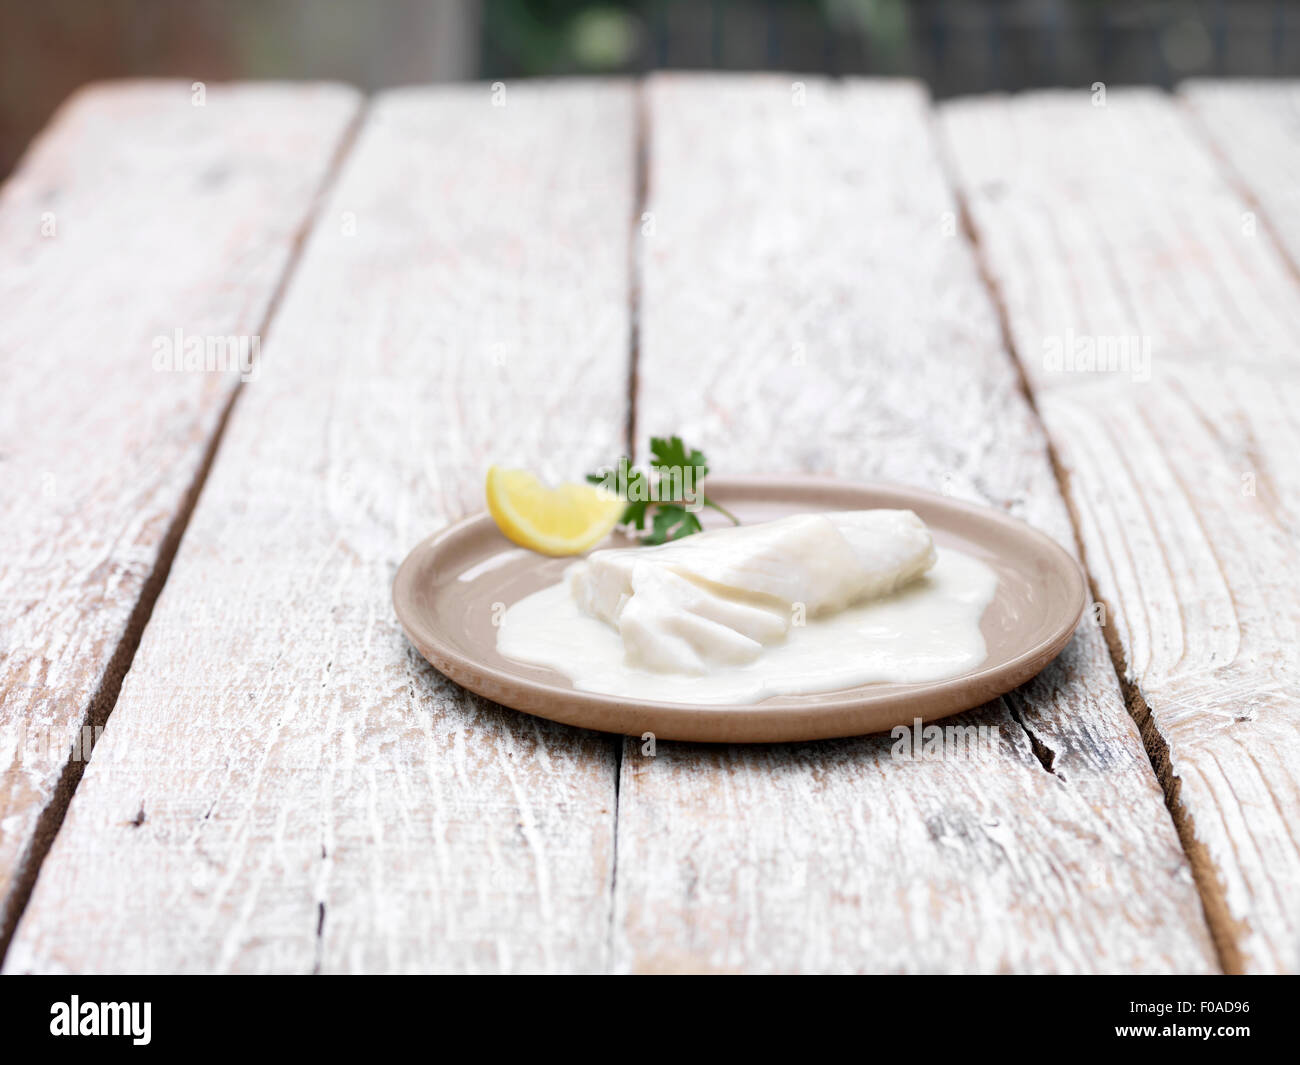 Plaque de cuisson en sachet églefin mornay sur table en bois Banque D'Images